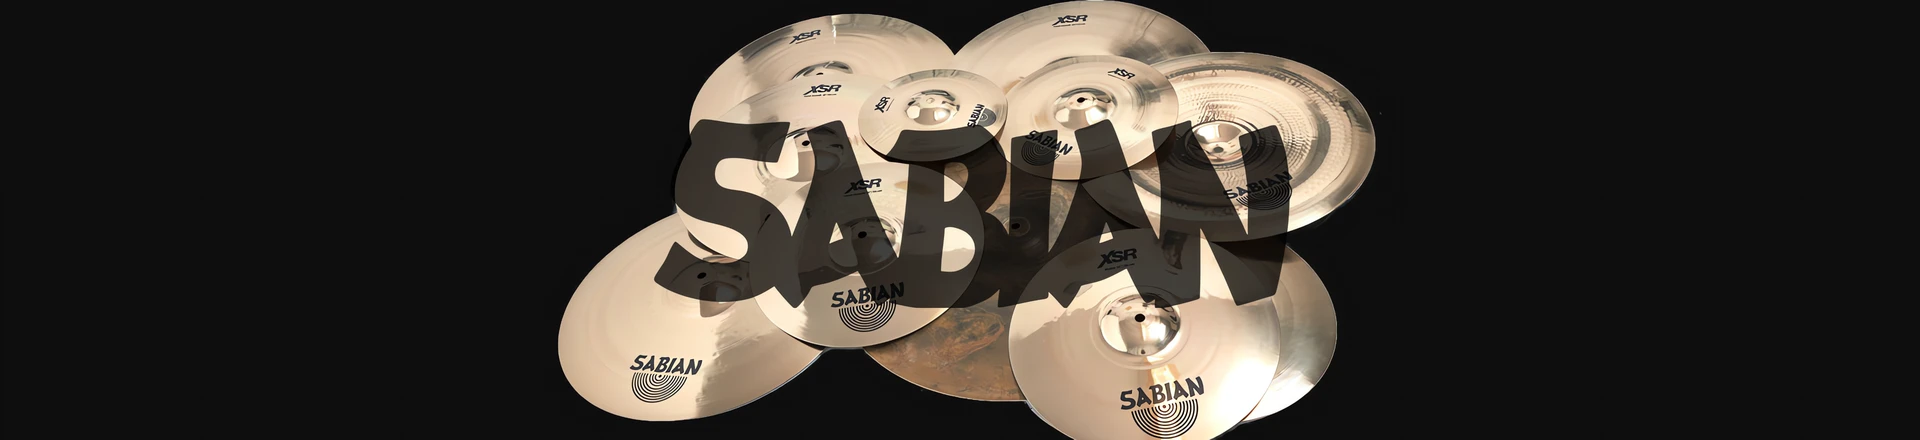 Sabian wprowadza na rynek trzy nowe modele talerzy serii XSR